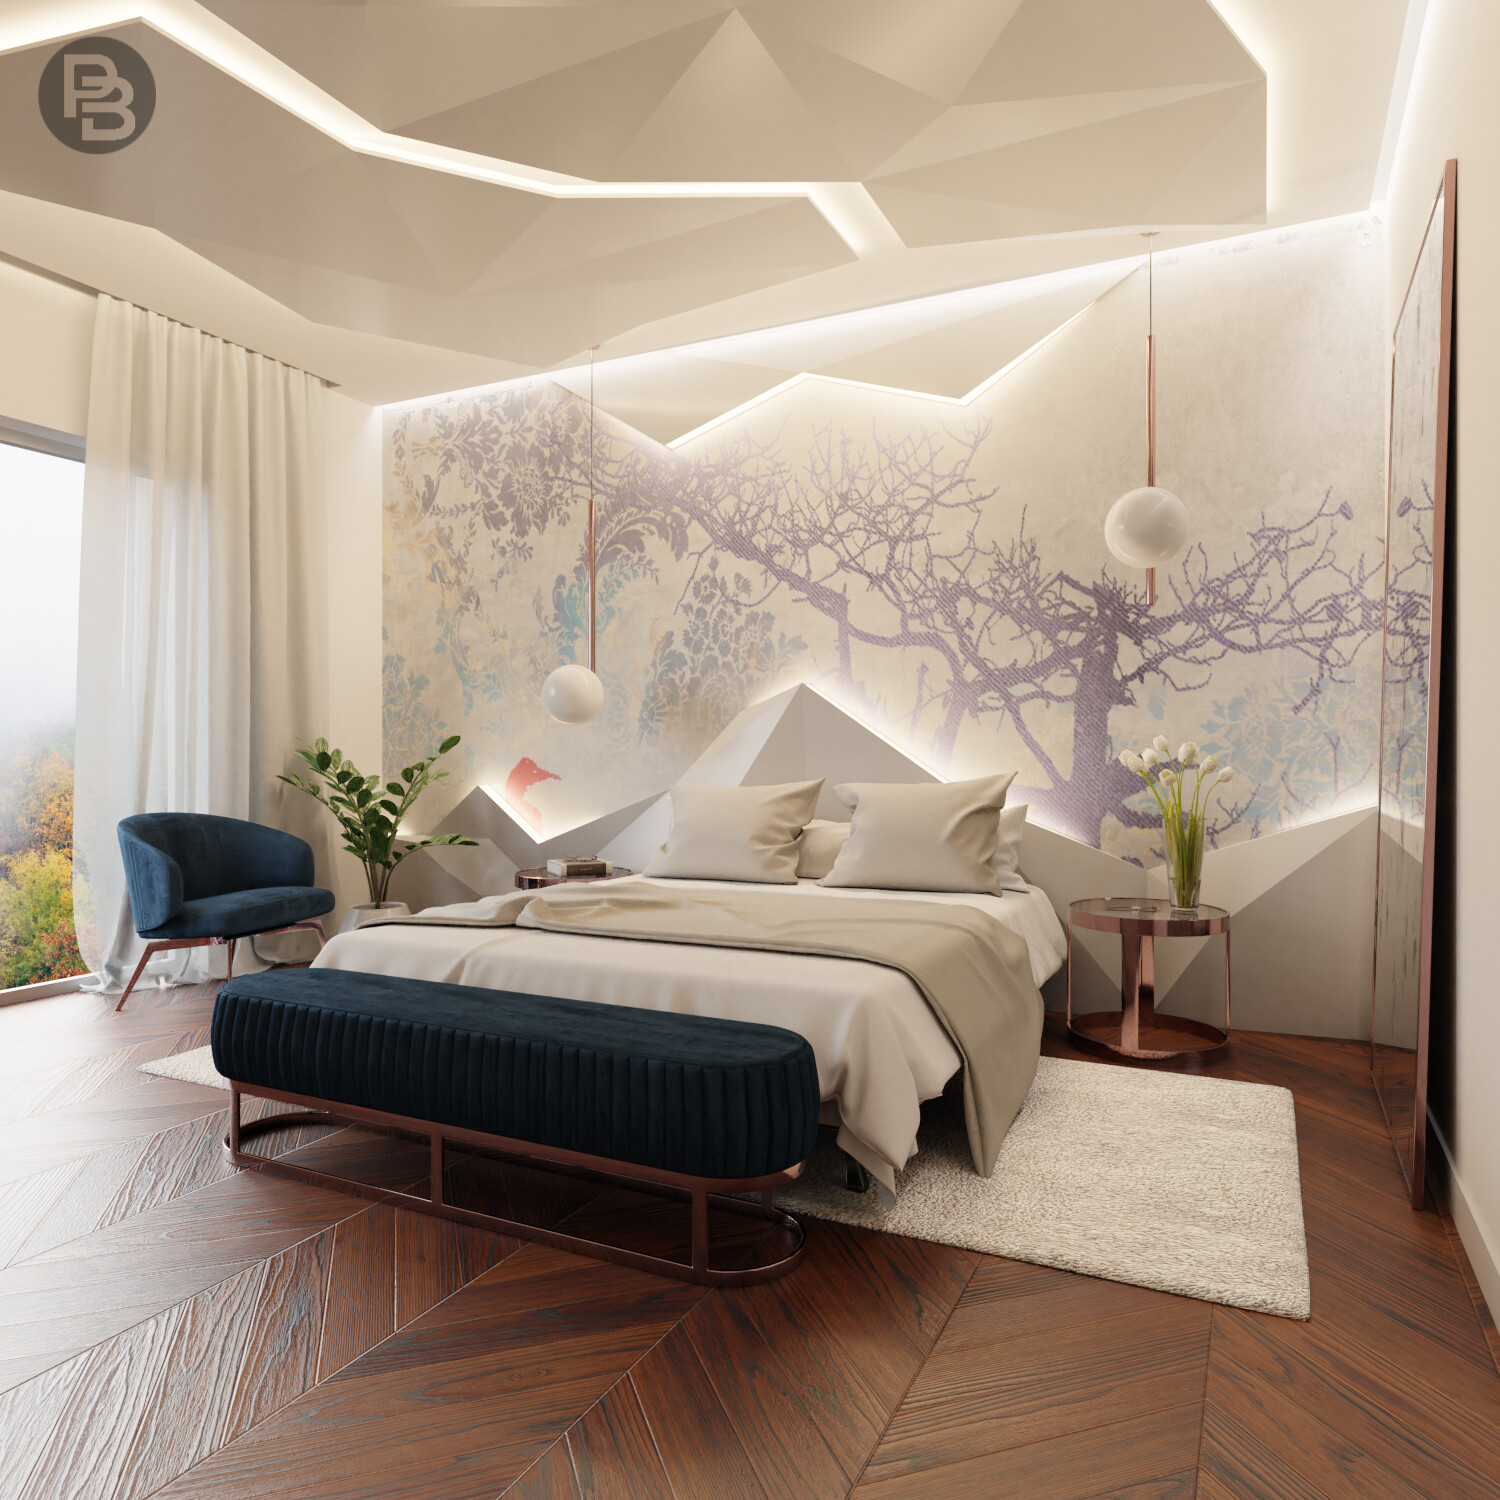 Geometric bedroom